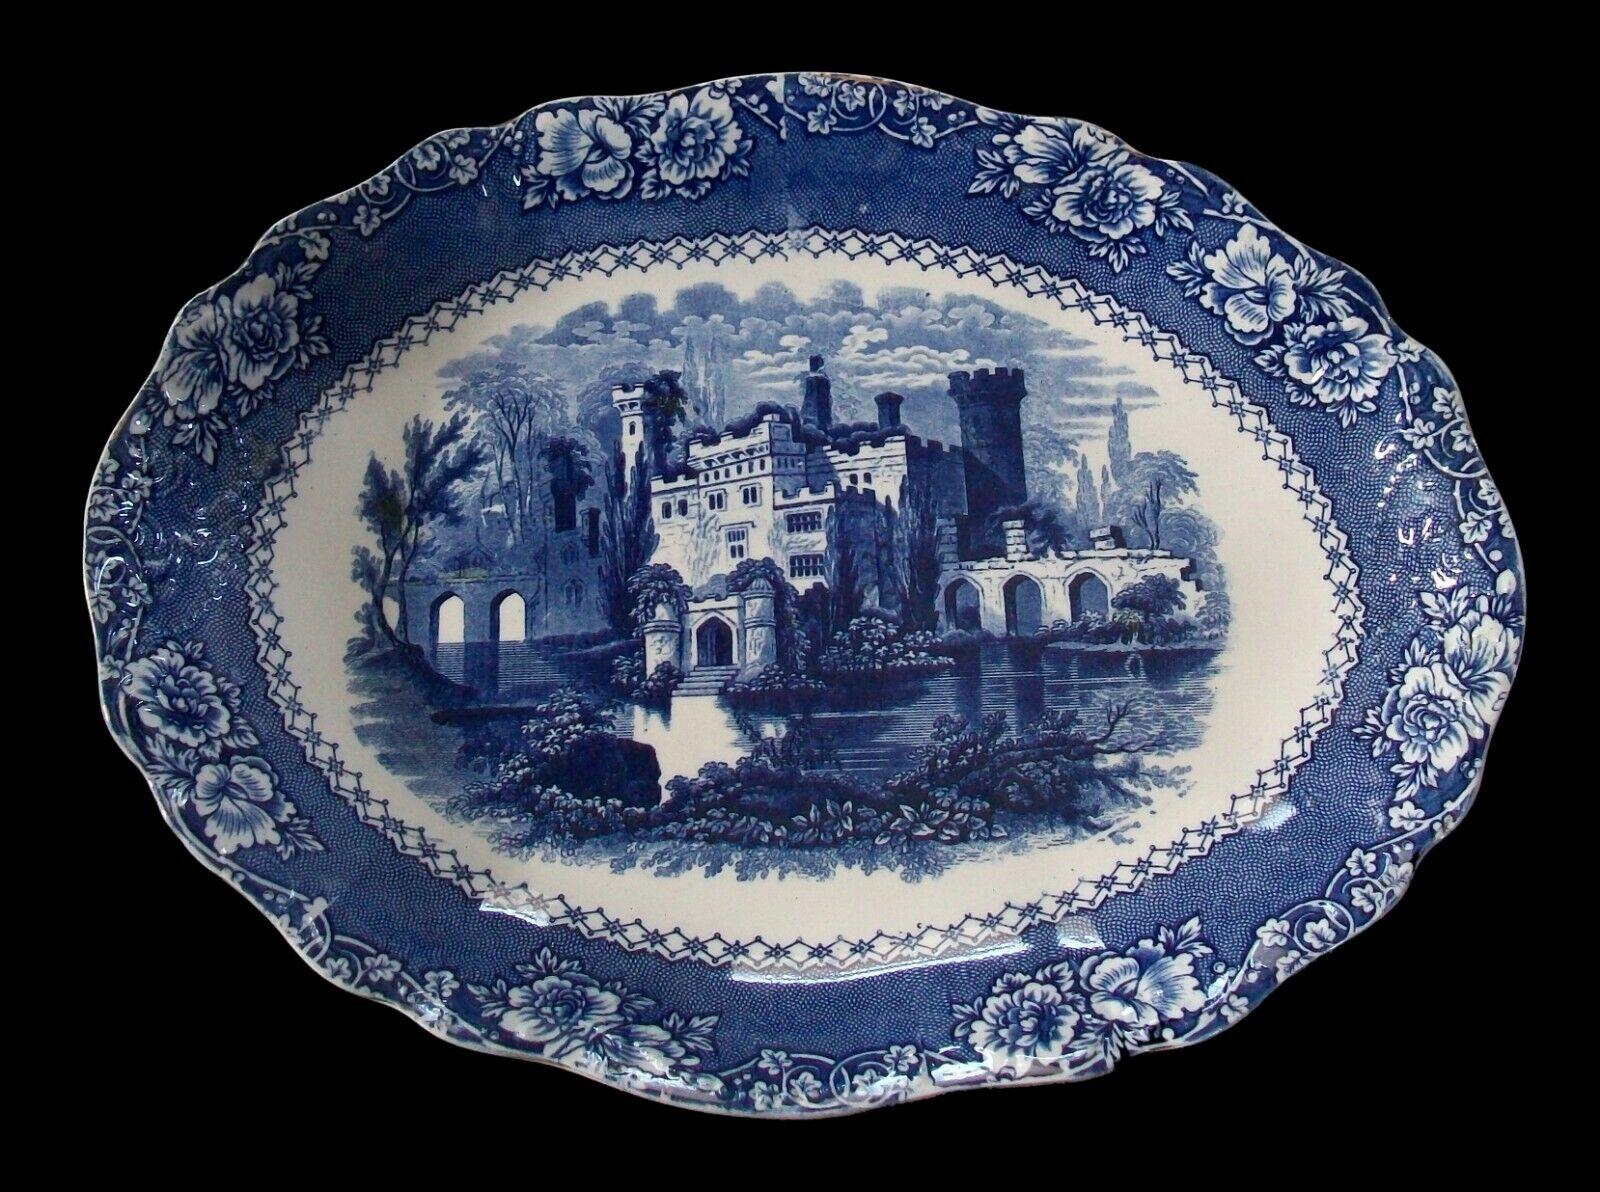 ALHAMBRA (nom du modèle) - plateau ou plateau en grès de Staffordshire, de style victorien, décoré par transfert de bleu - avec un château au centre et une bordure à motif floral - poignées en relief à chaque extrémité - glaçage brillant dans